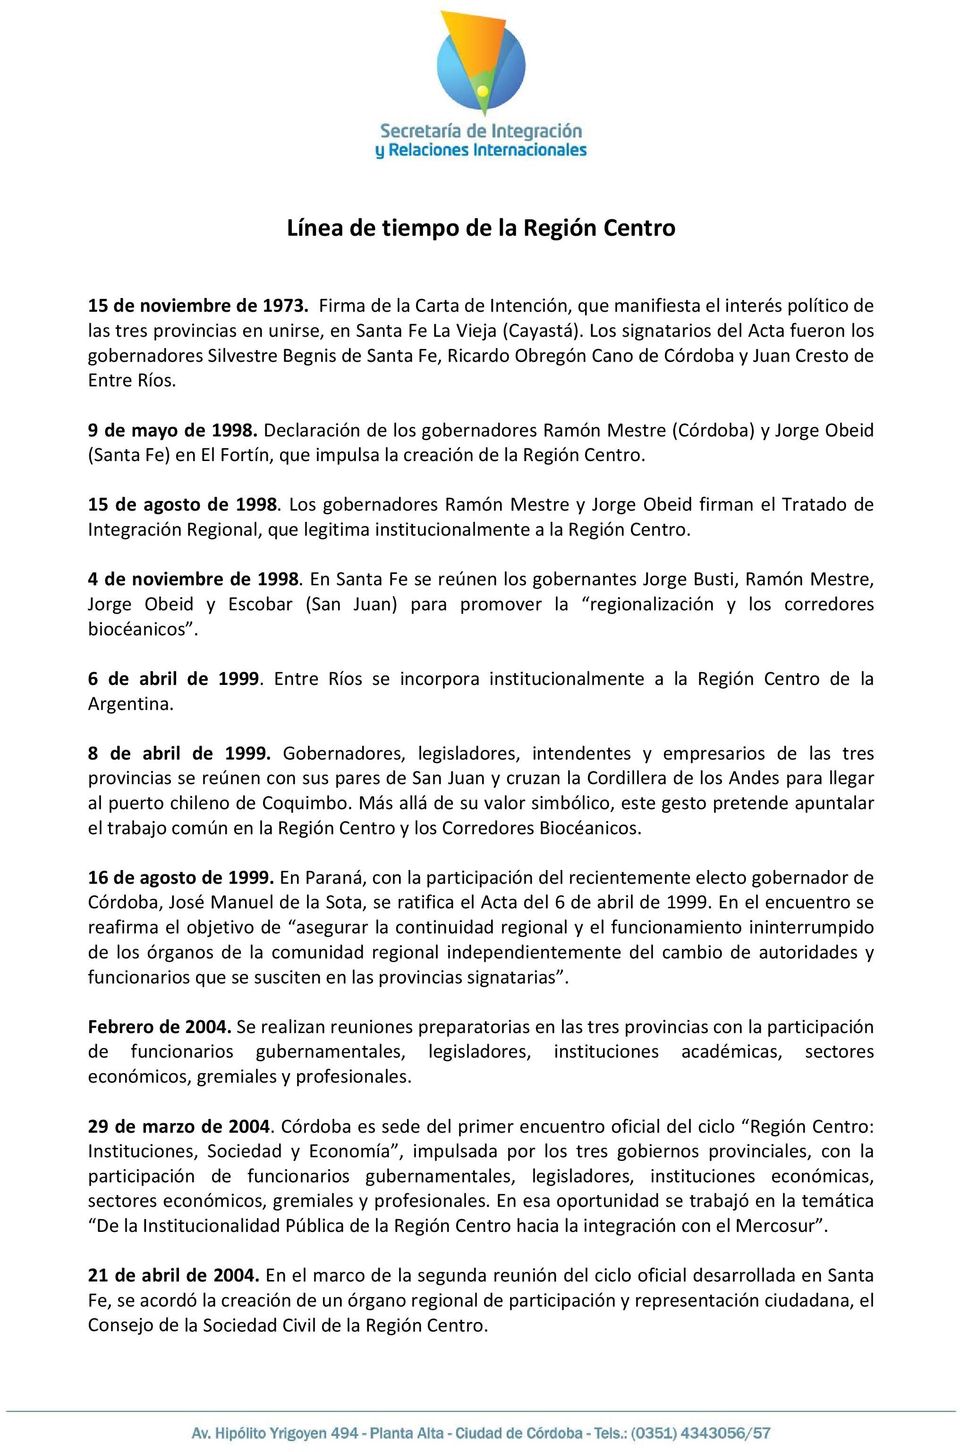 Declaración de los gobernadores Ramón Mestre (Córdoba) y Jorge Obeid (Santa Fe) en El Fortín, que impulsa la creación de la Región Centro. 15 de agosto de 1998.